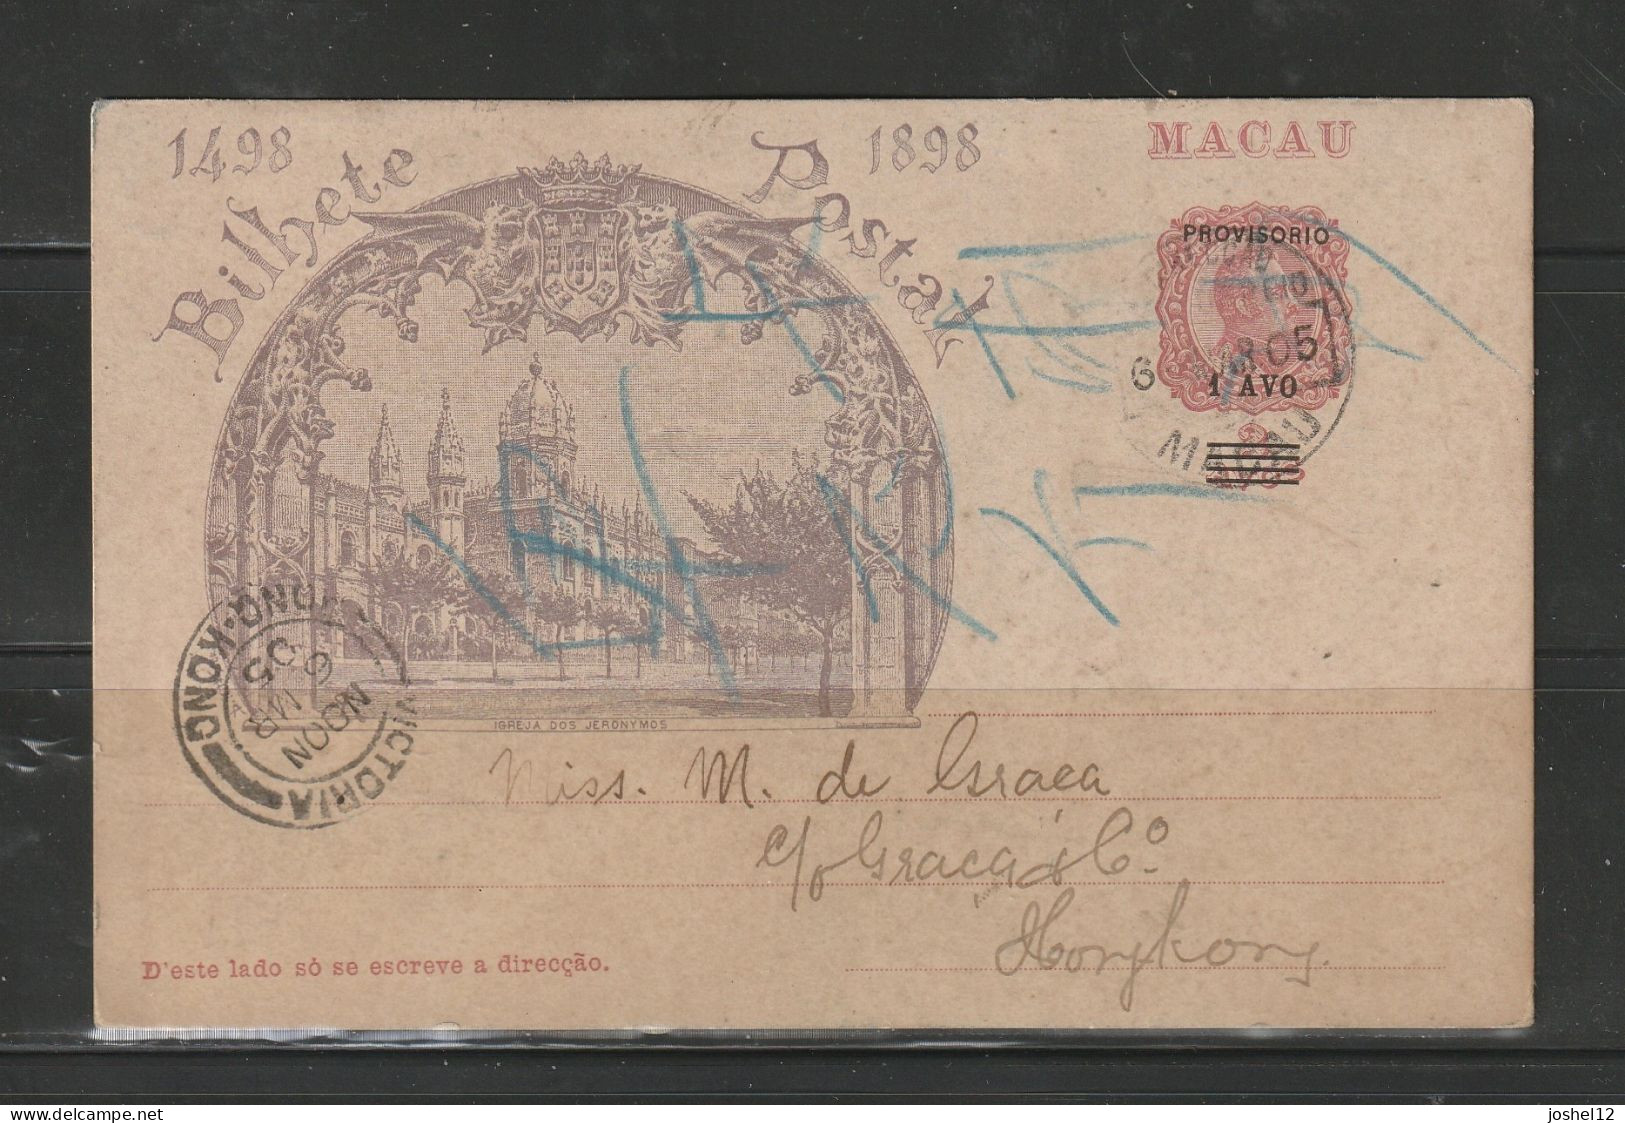 Macau Macao 1905 Single PSC 1a/2a Used To Hong Kong - Covers & Documents